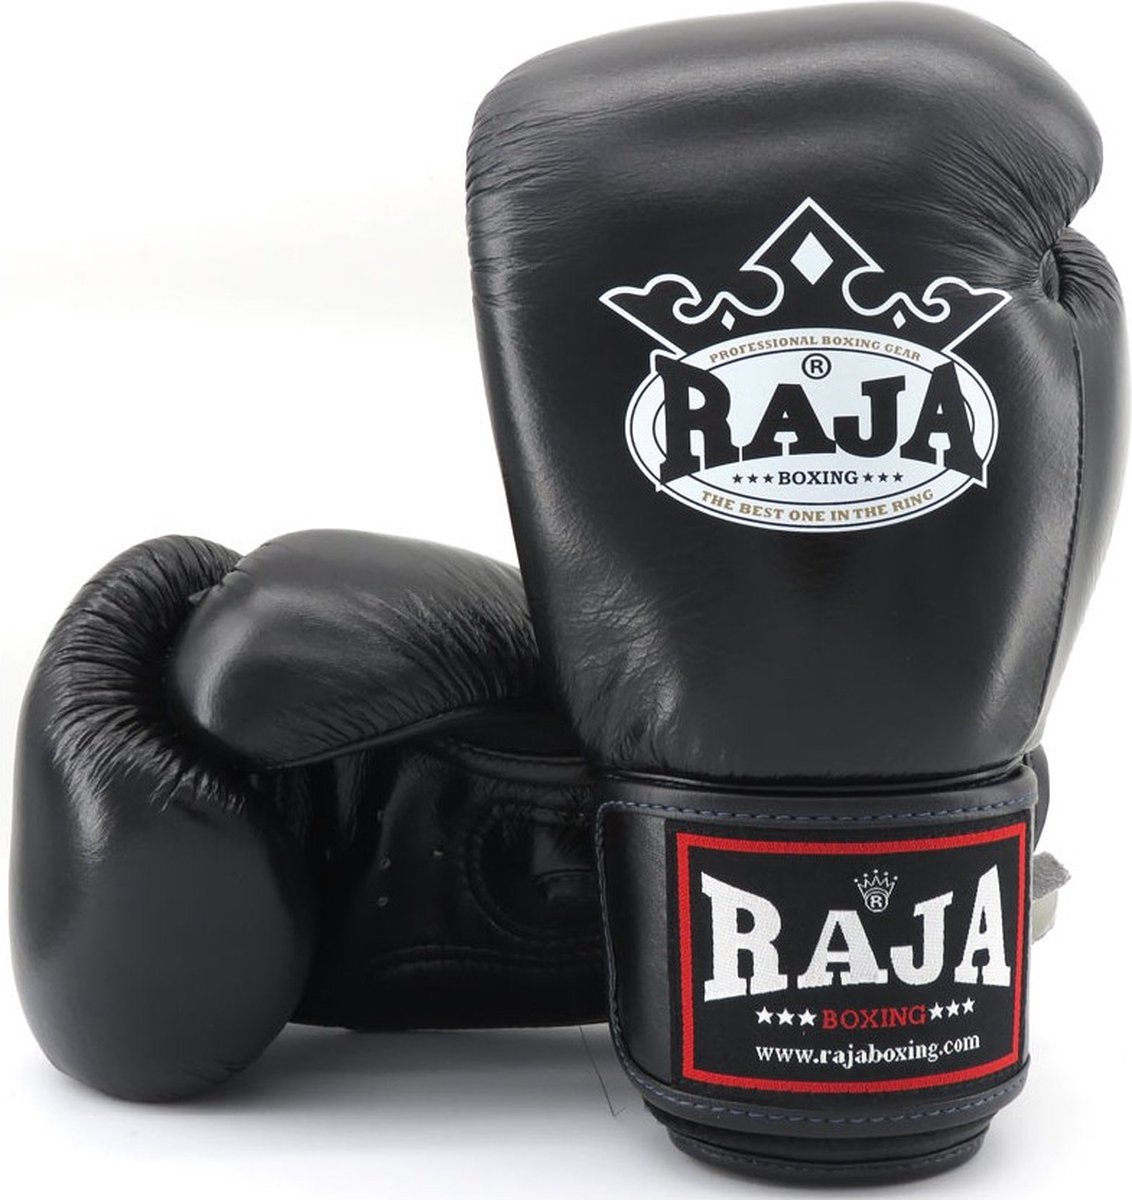 Raja Boxing Bokshandschoen Leder Zwart - 10 oz.